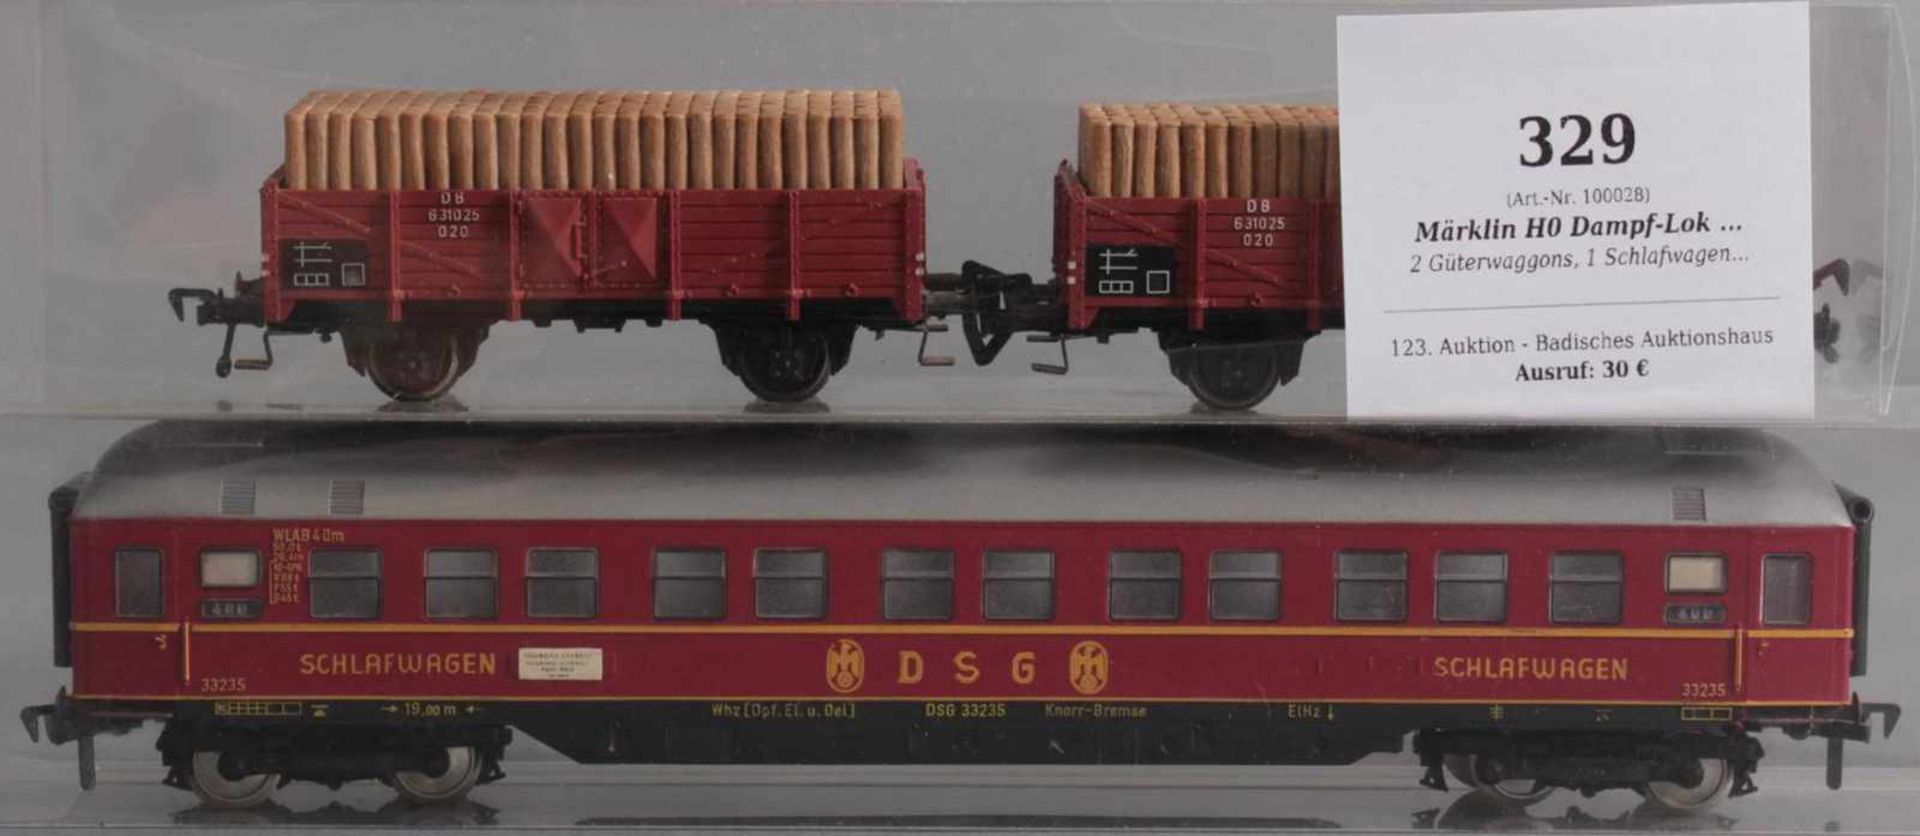 Märklin H0 Dampf-Lok 3308 mit 6 Fleischmann Waggons2 Güterwaggons, 1 Schlafwagen, 1 Personenwaggon - Image 3 of 4